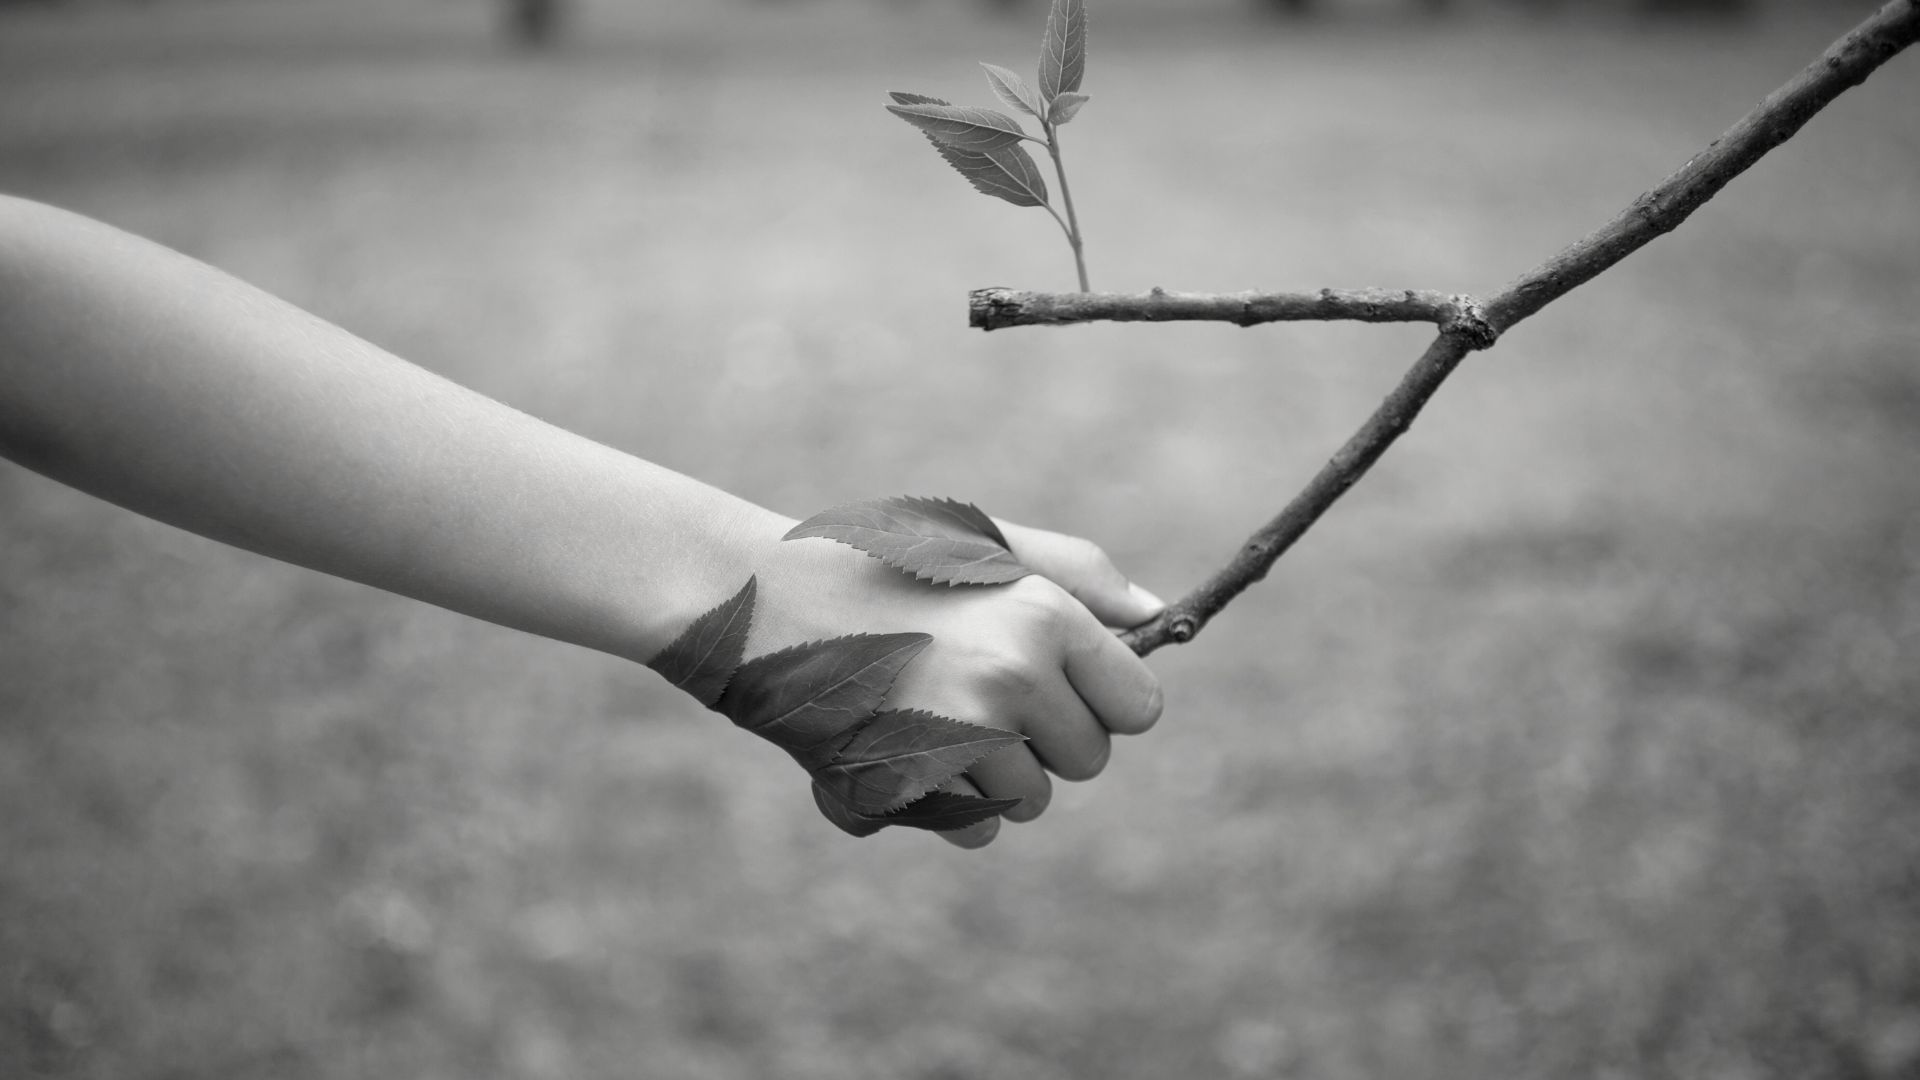 Un'immagine in bianco e nero di una mano di un bambino che tiene un ramo con alcune foglie attaccate, simboleggiando la connessione con la natura o forse un gioco infantile all'aperto.